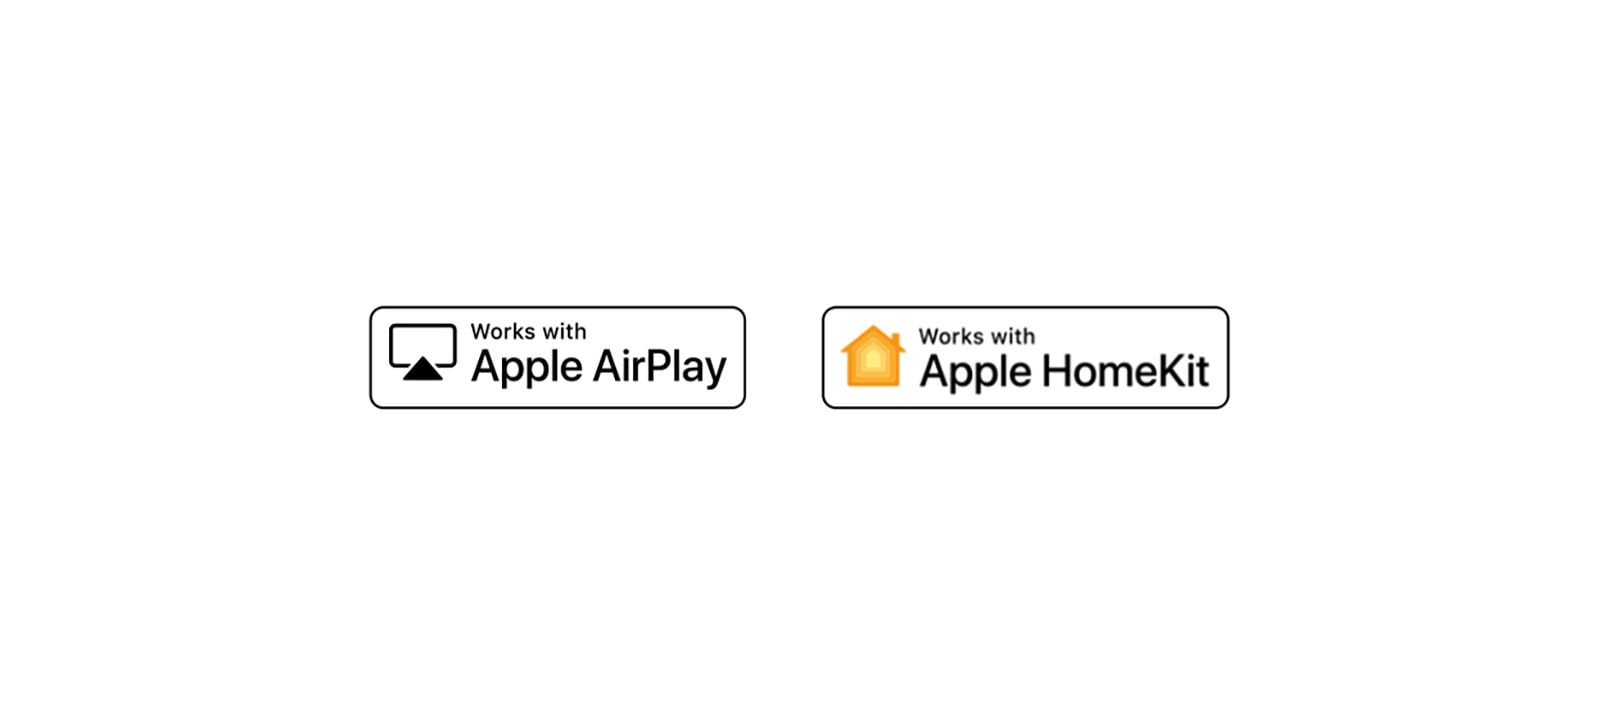 Λεπτομέρειες που δείχνουν τα λογότυπα των Hey Google, alexa, Apple Airplay και Apple HomeKit, με τα οποία είναι συμβατό το ThinQ AI.